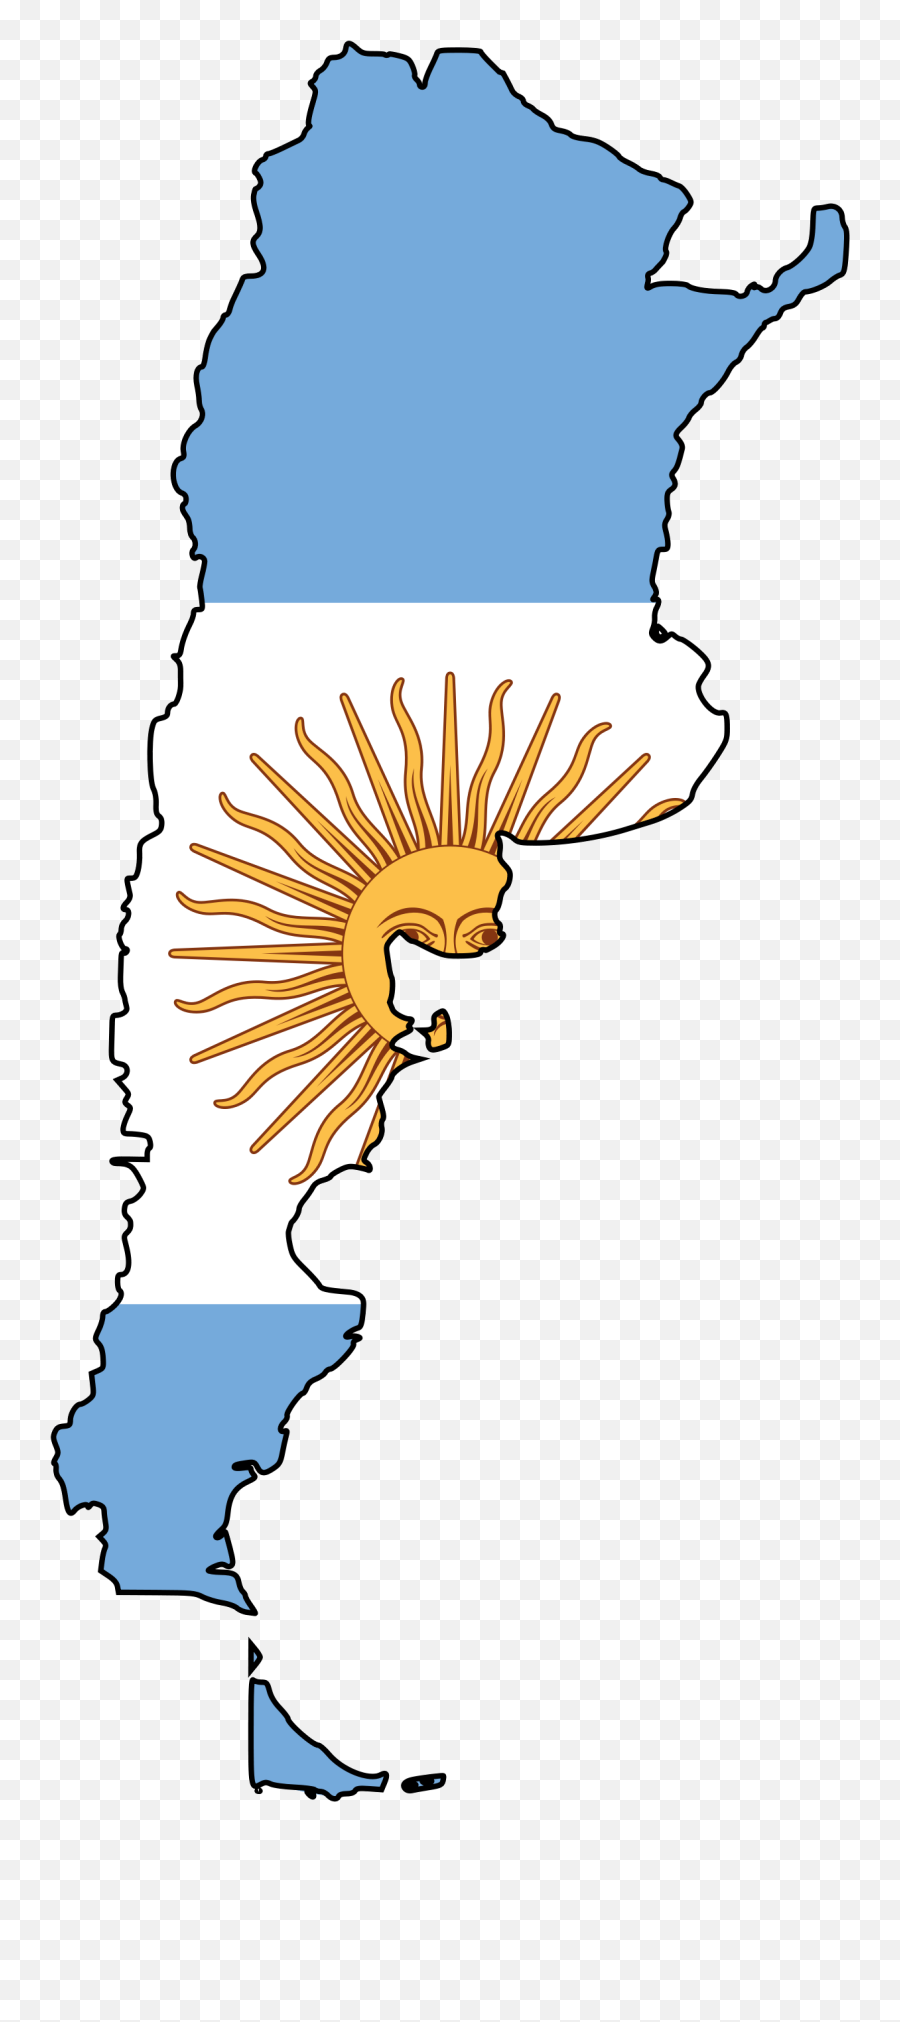 Argentina Flag Map Mapsof - Argentina Flag Map Png,Argentina Flag Png